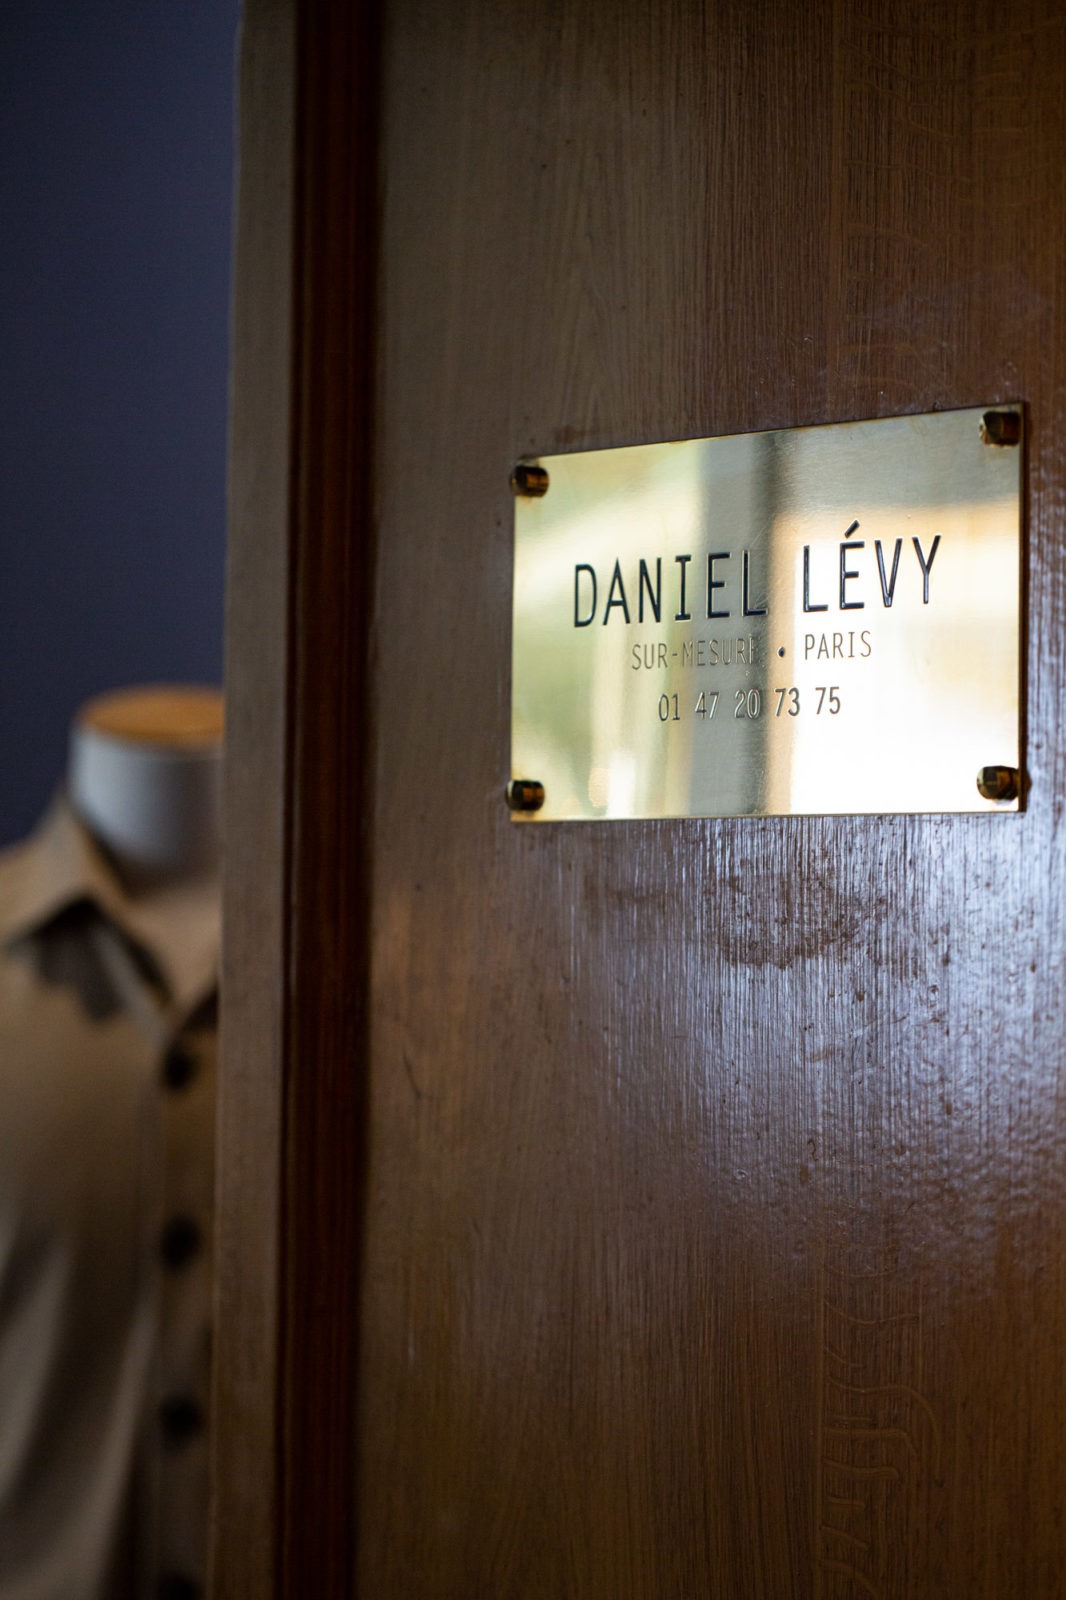 Daniel Levy - Chemises sur-mesure